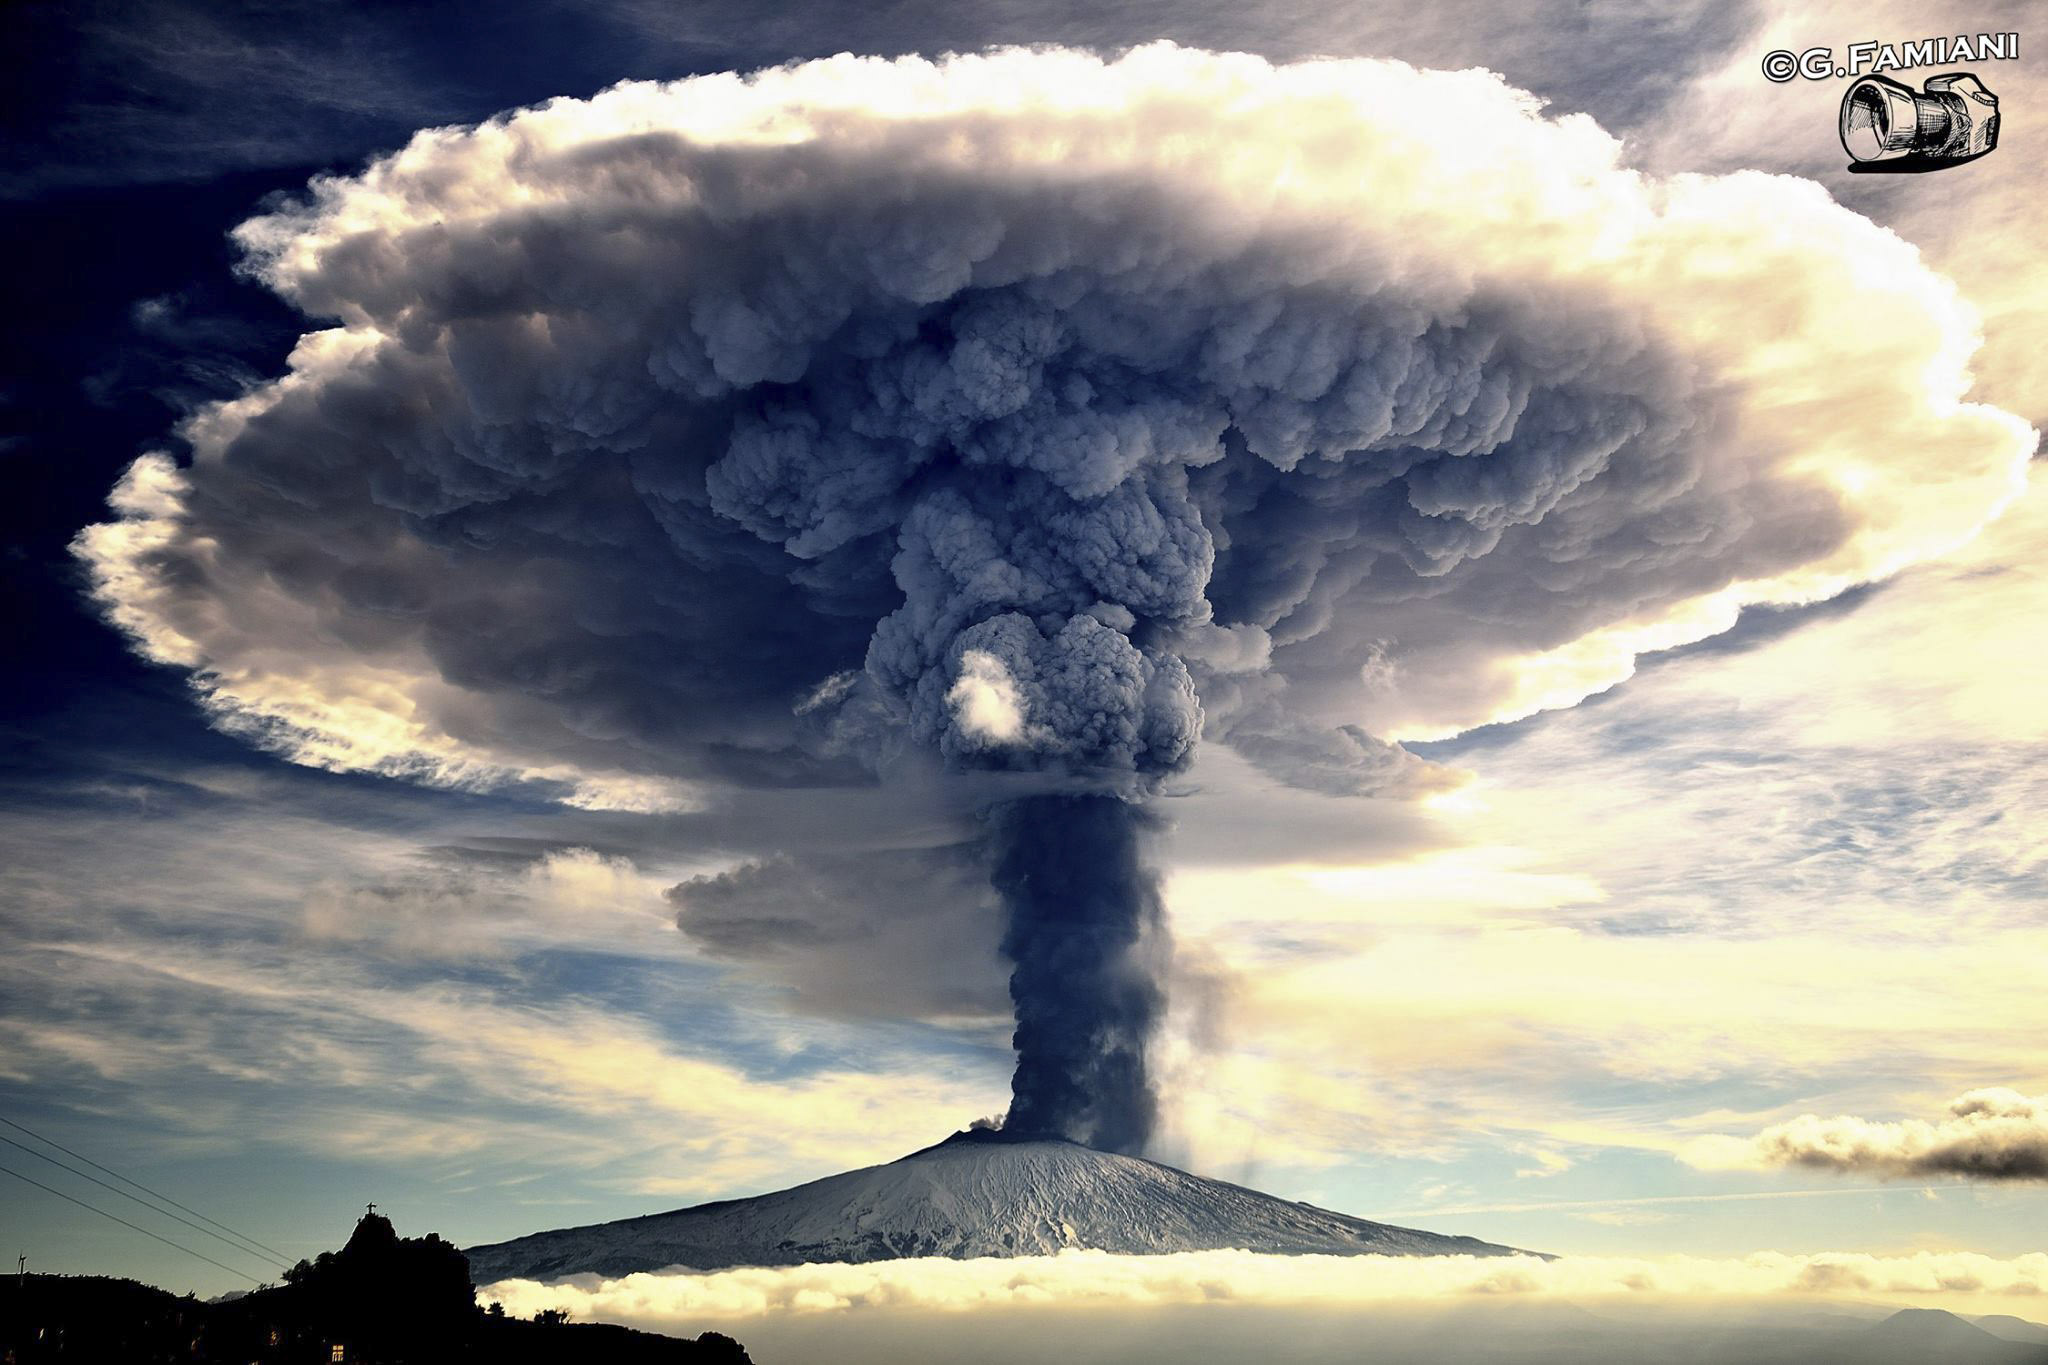 “Sensazioni, Etna in Eruzione” - Foto di Giuseppe Famiani